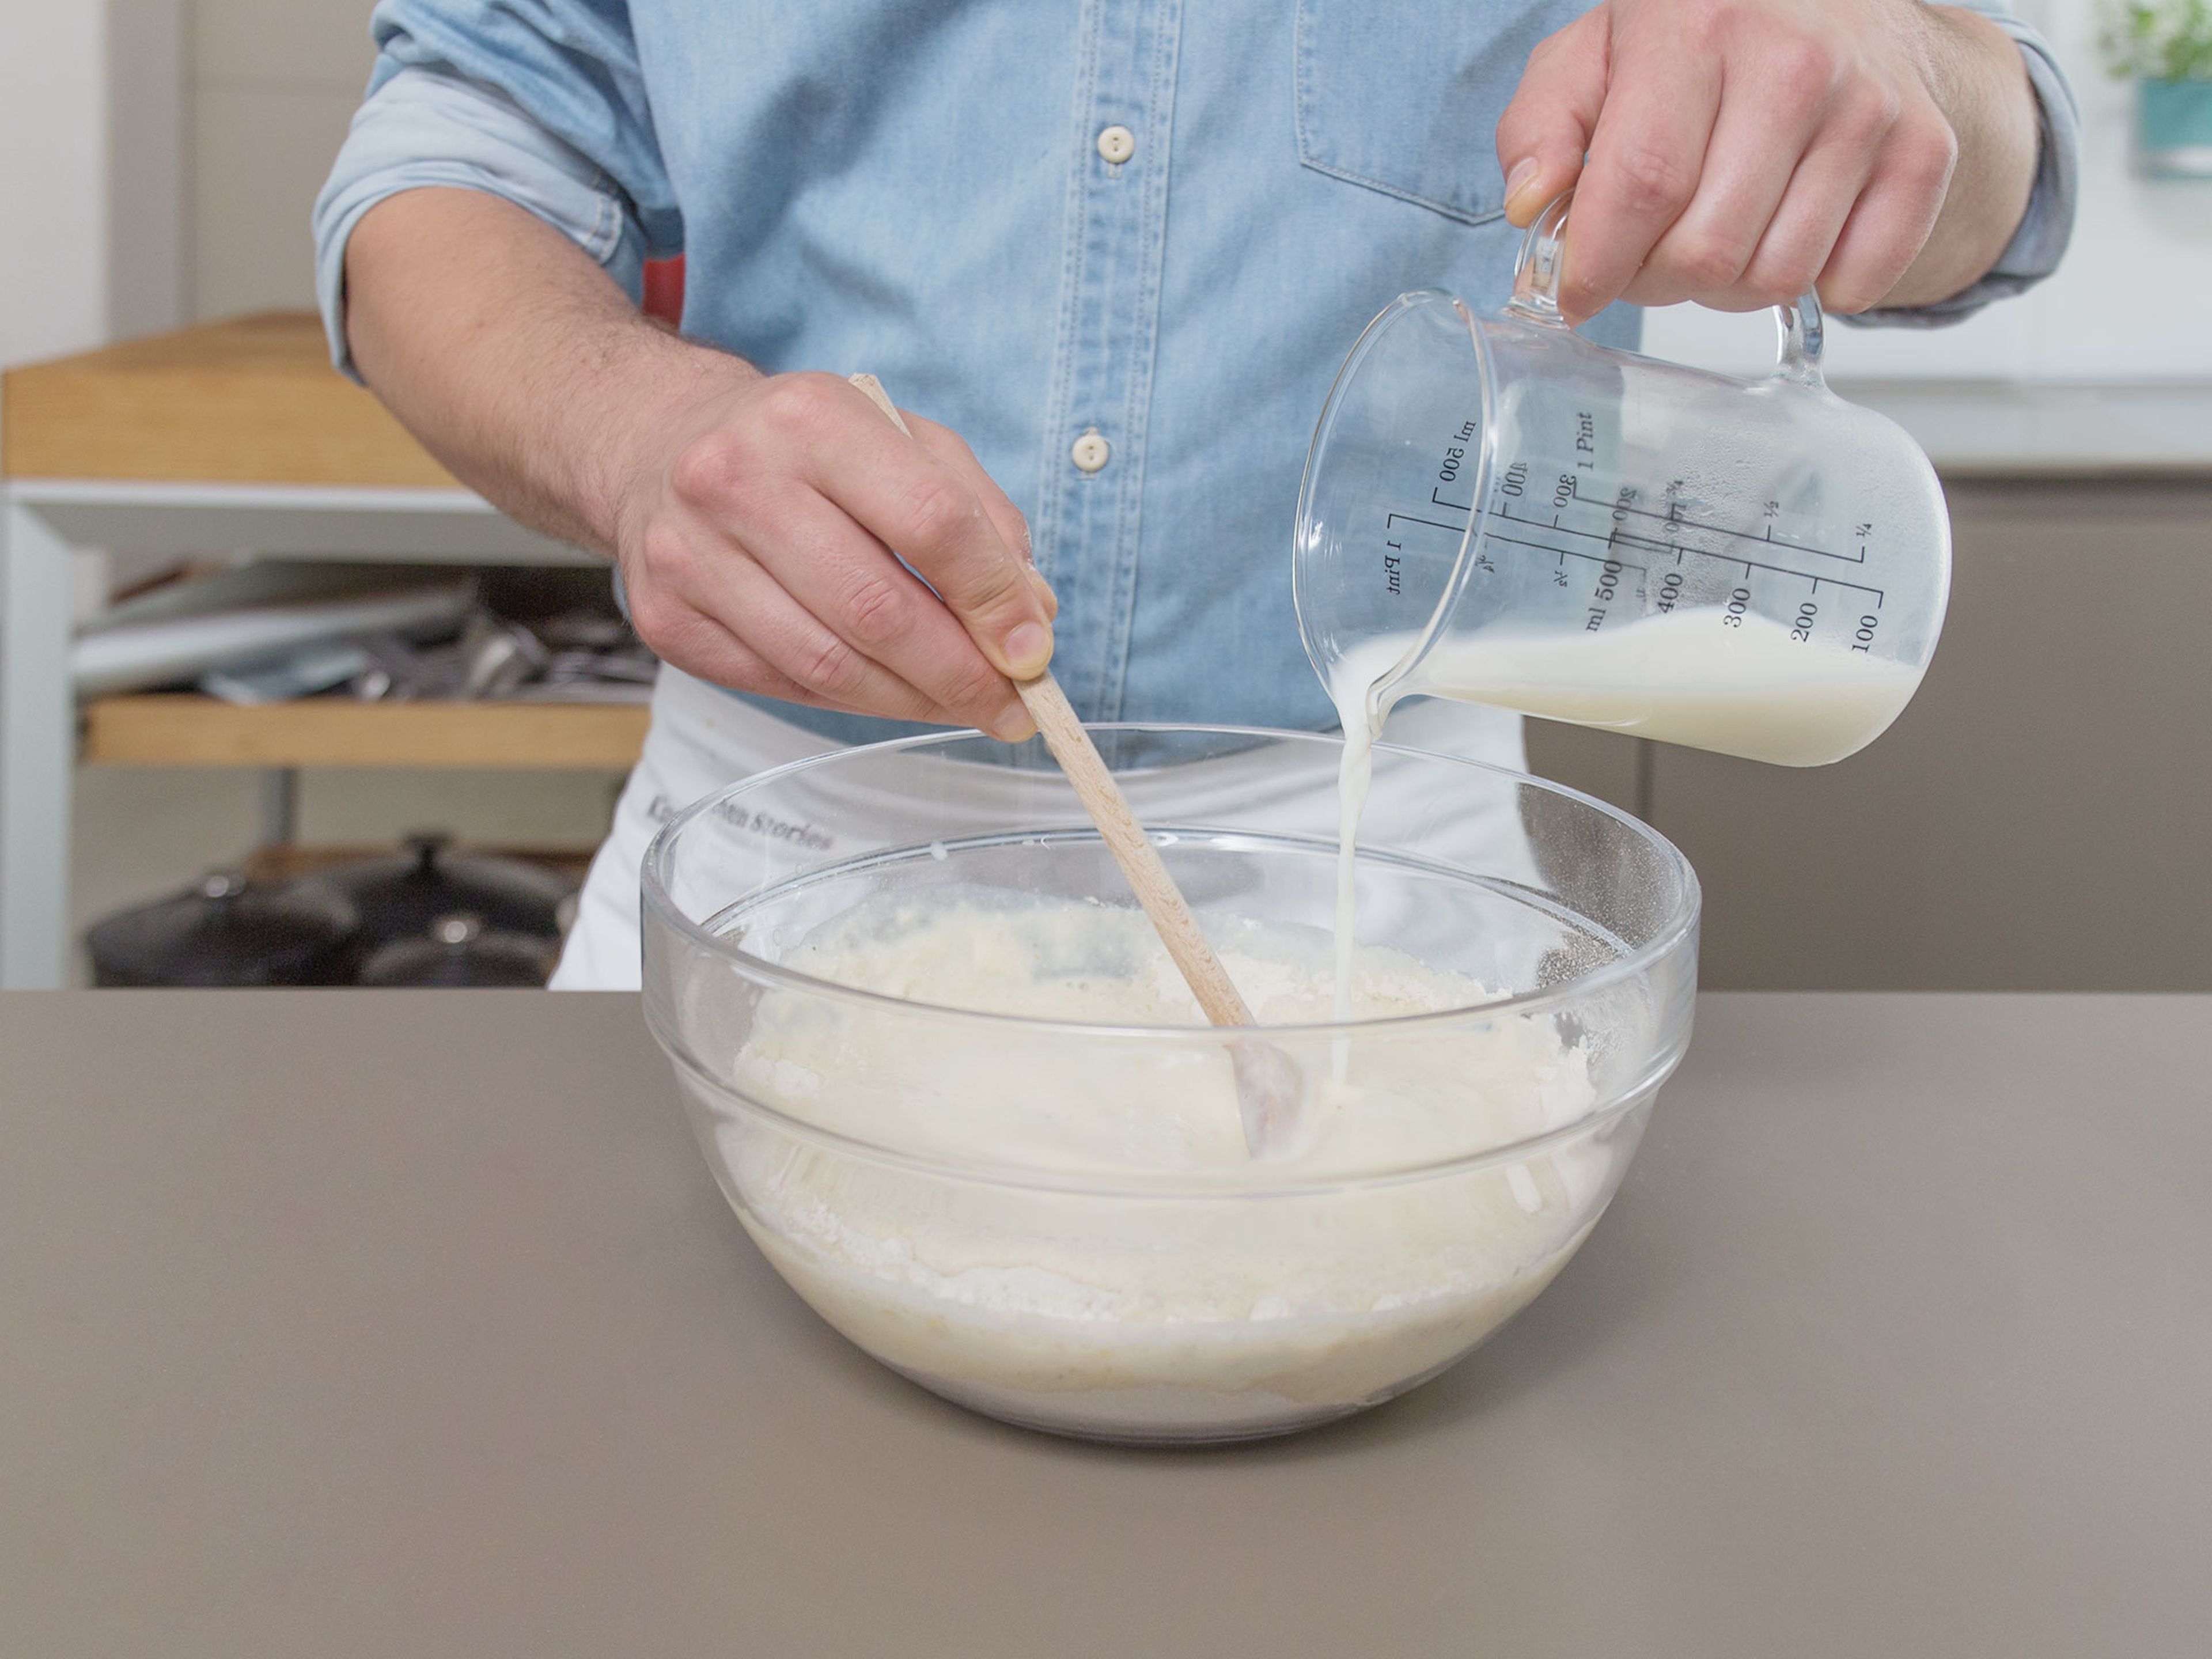 Buchweizenmehl, Buttermilch, Milch und Ei in einer großen Schüssel vermengen. Mit dem restlichen Zucker, Salz und Pfeffer würzen. Ca. 10 Min. ruhen lassen.